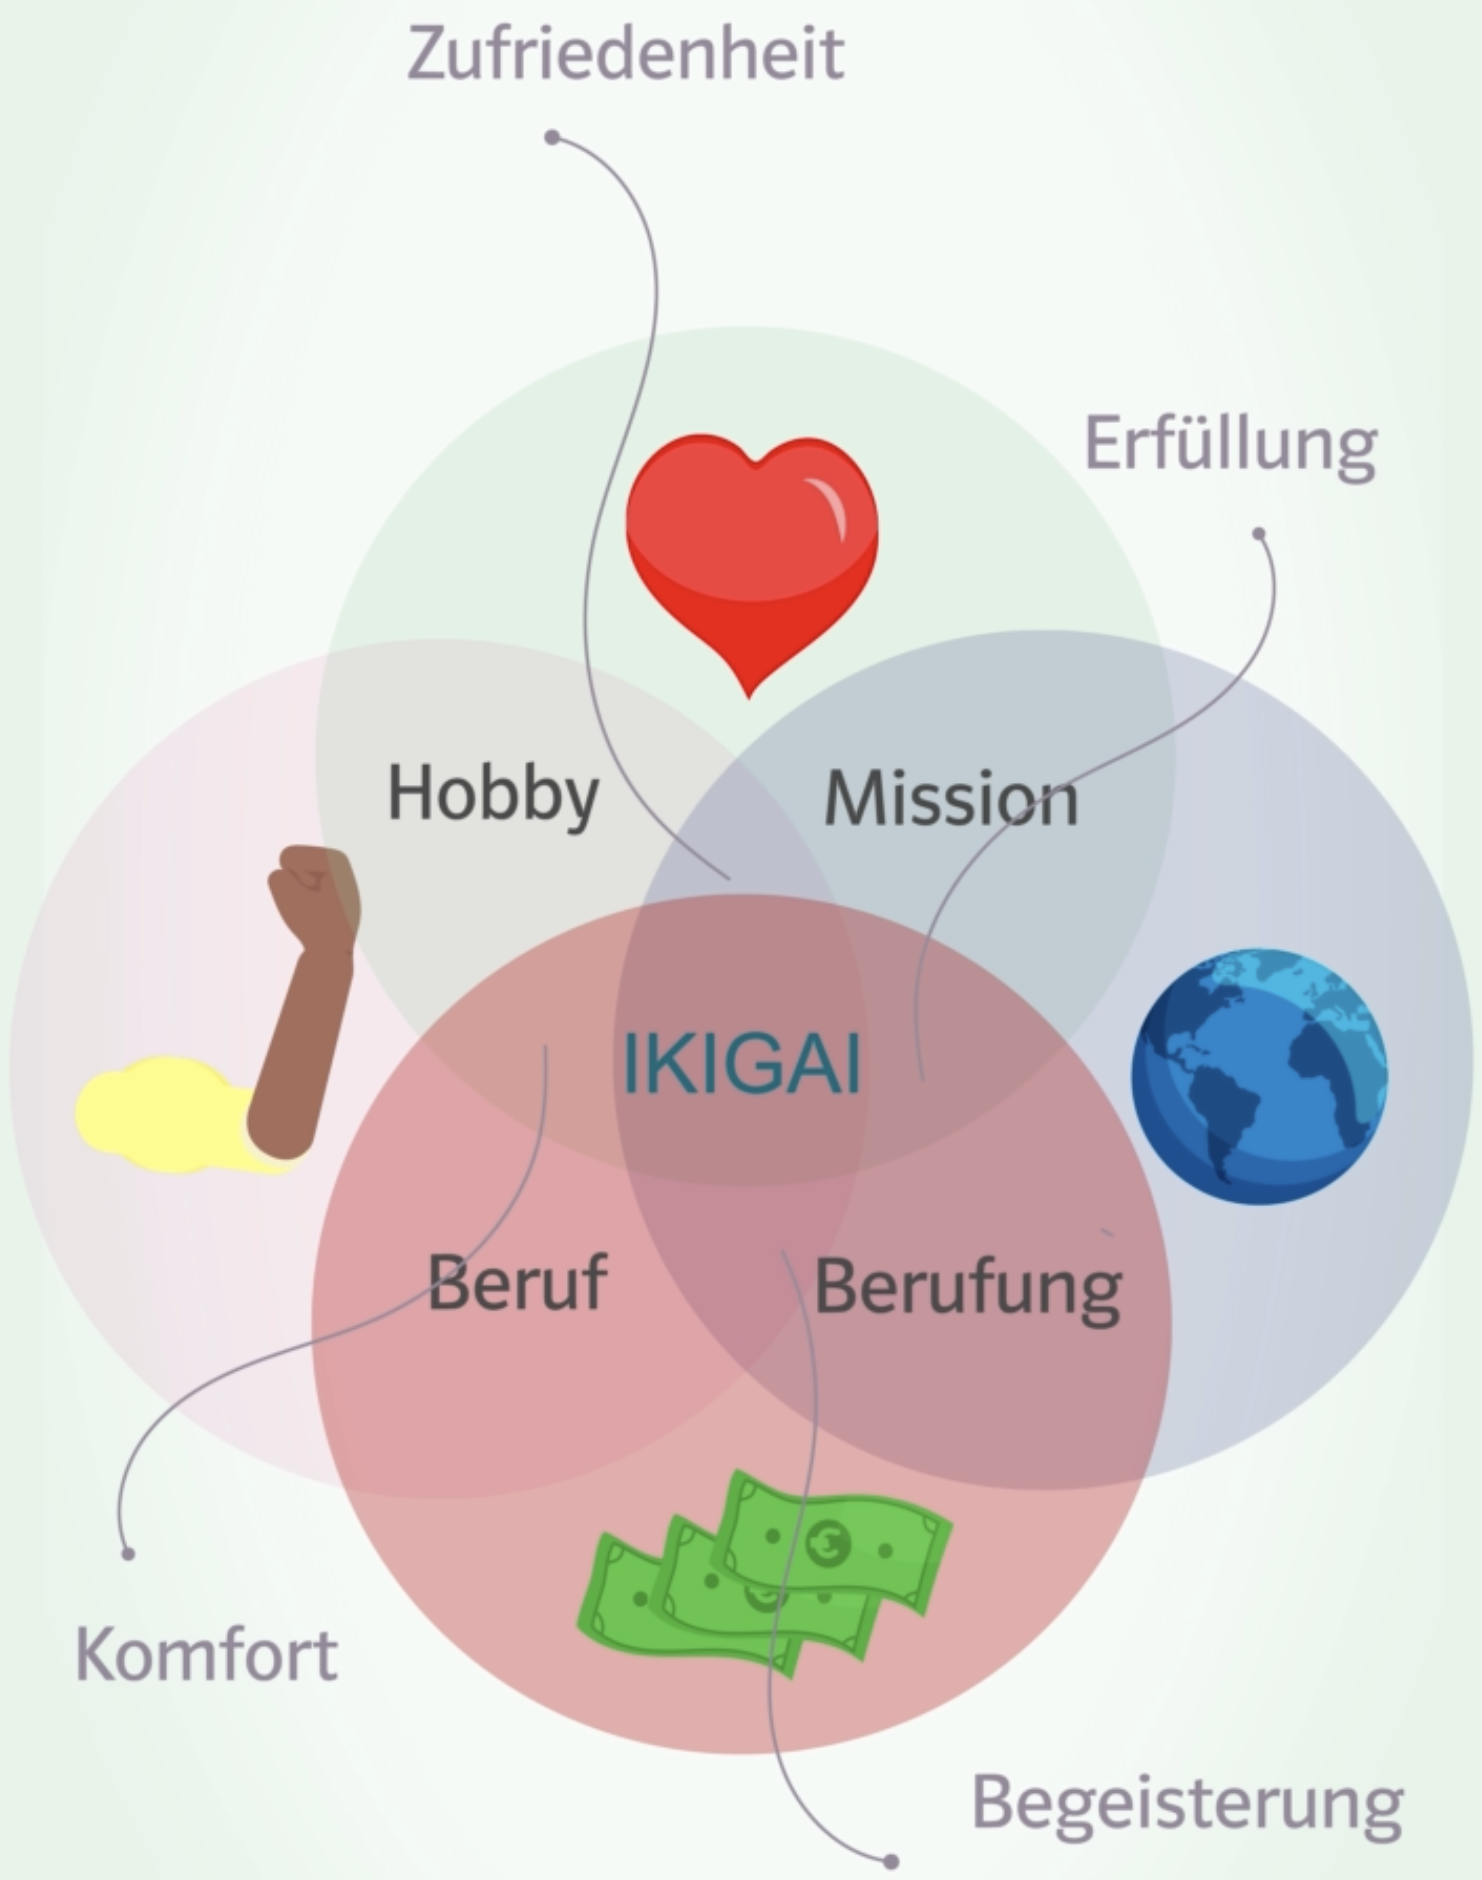 Bildschirmausschnitt des 'So funktionierts'-Videos in der App Circles. Dargestellt ist ein Mengendiagramm, in dem sich die 4 als Kreise dargestellten Aspekte 'Worin du gut bist' (Stärke), 'Was du liebst' (Herz), 'Was die Welt braucht' (Welt) und 'Womit du Geld verdienen kannst' (Geld) überschneiden. Die gemeinsame Schnittmenge aller 4 Kreise ist beschriftet mit 'Ikigai'. Die 4 Schnittmengen zwischen 2 Kreisen sind wie folgt beschriftet: Stärken + Herz = Hobby, Herz + Welt = Mission, Welt + Geld = Berufung, Geld + Stärken = Beruf. Dort, wo diese Schnittmengen sich überschneiden stehen wiederum Beschriftungen:  Hobby + Mission = Zufriedenheit, Mission + Berufung = Erfüllung, Berufung + Beruf = Begeisterung, Beruf + Hobby = Komfort.